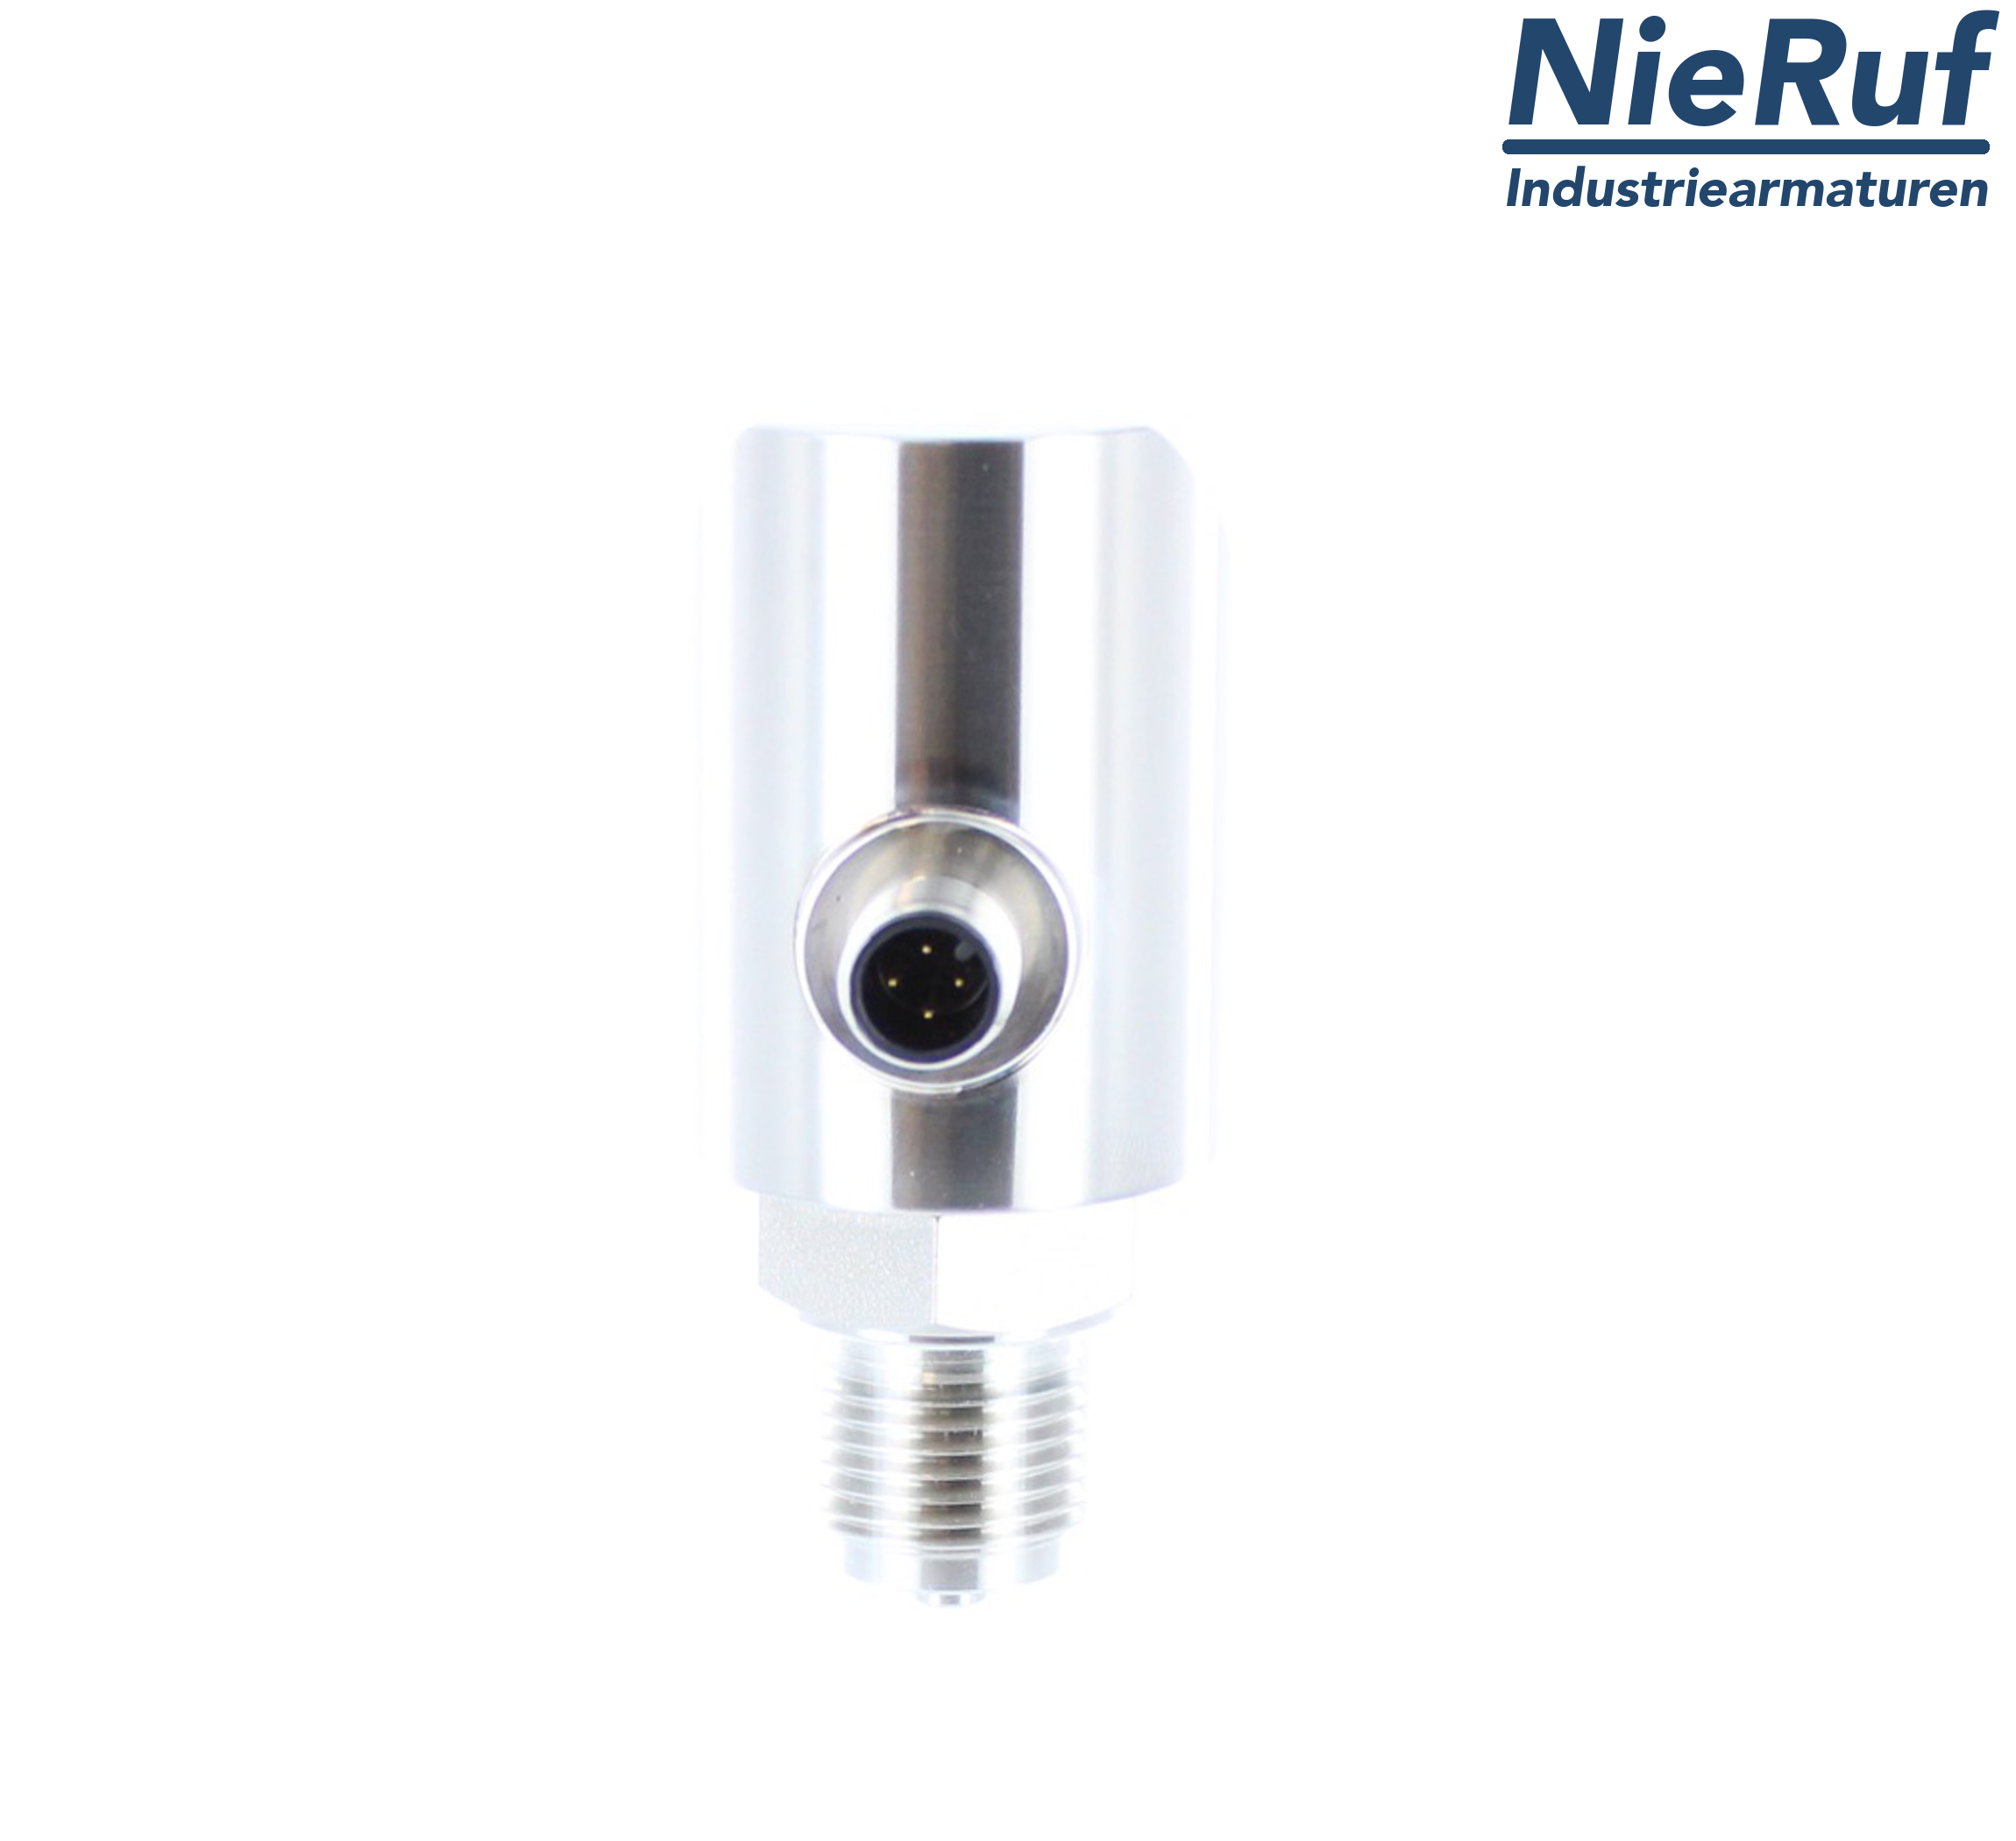 digital pressure sensor G 1/2" B 5-wire: 2xPNP, 1x4 - 20mA FPM 0,0 - 1,0 bar